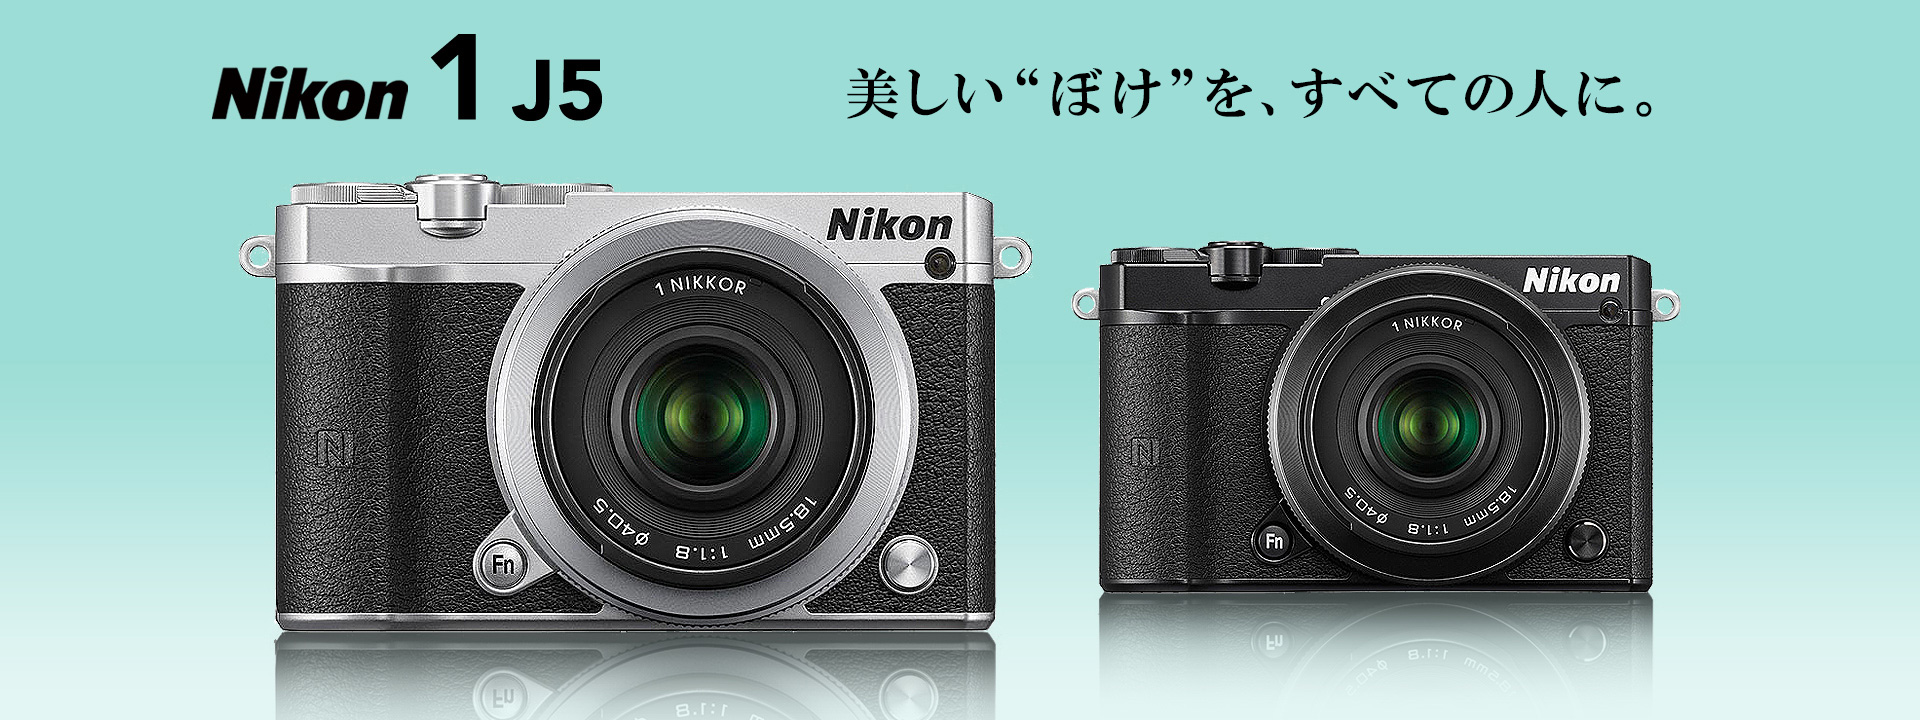 0円 【在庫有】 Nikon NIKON 1 J5 SILVER さとし様専用